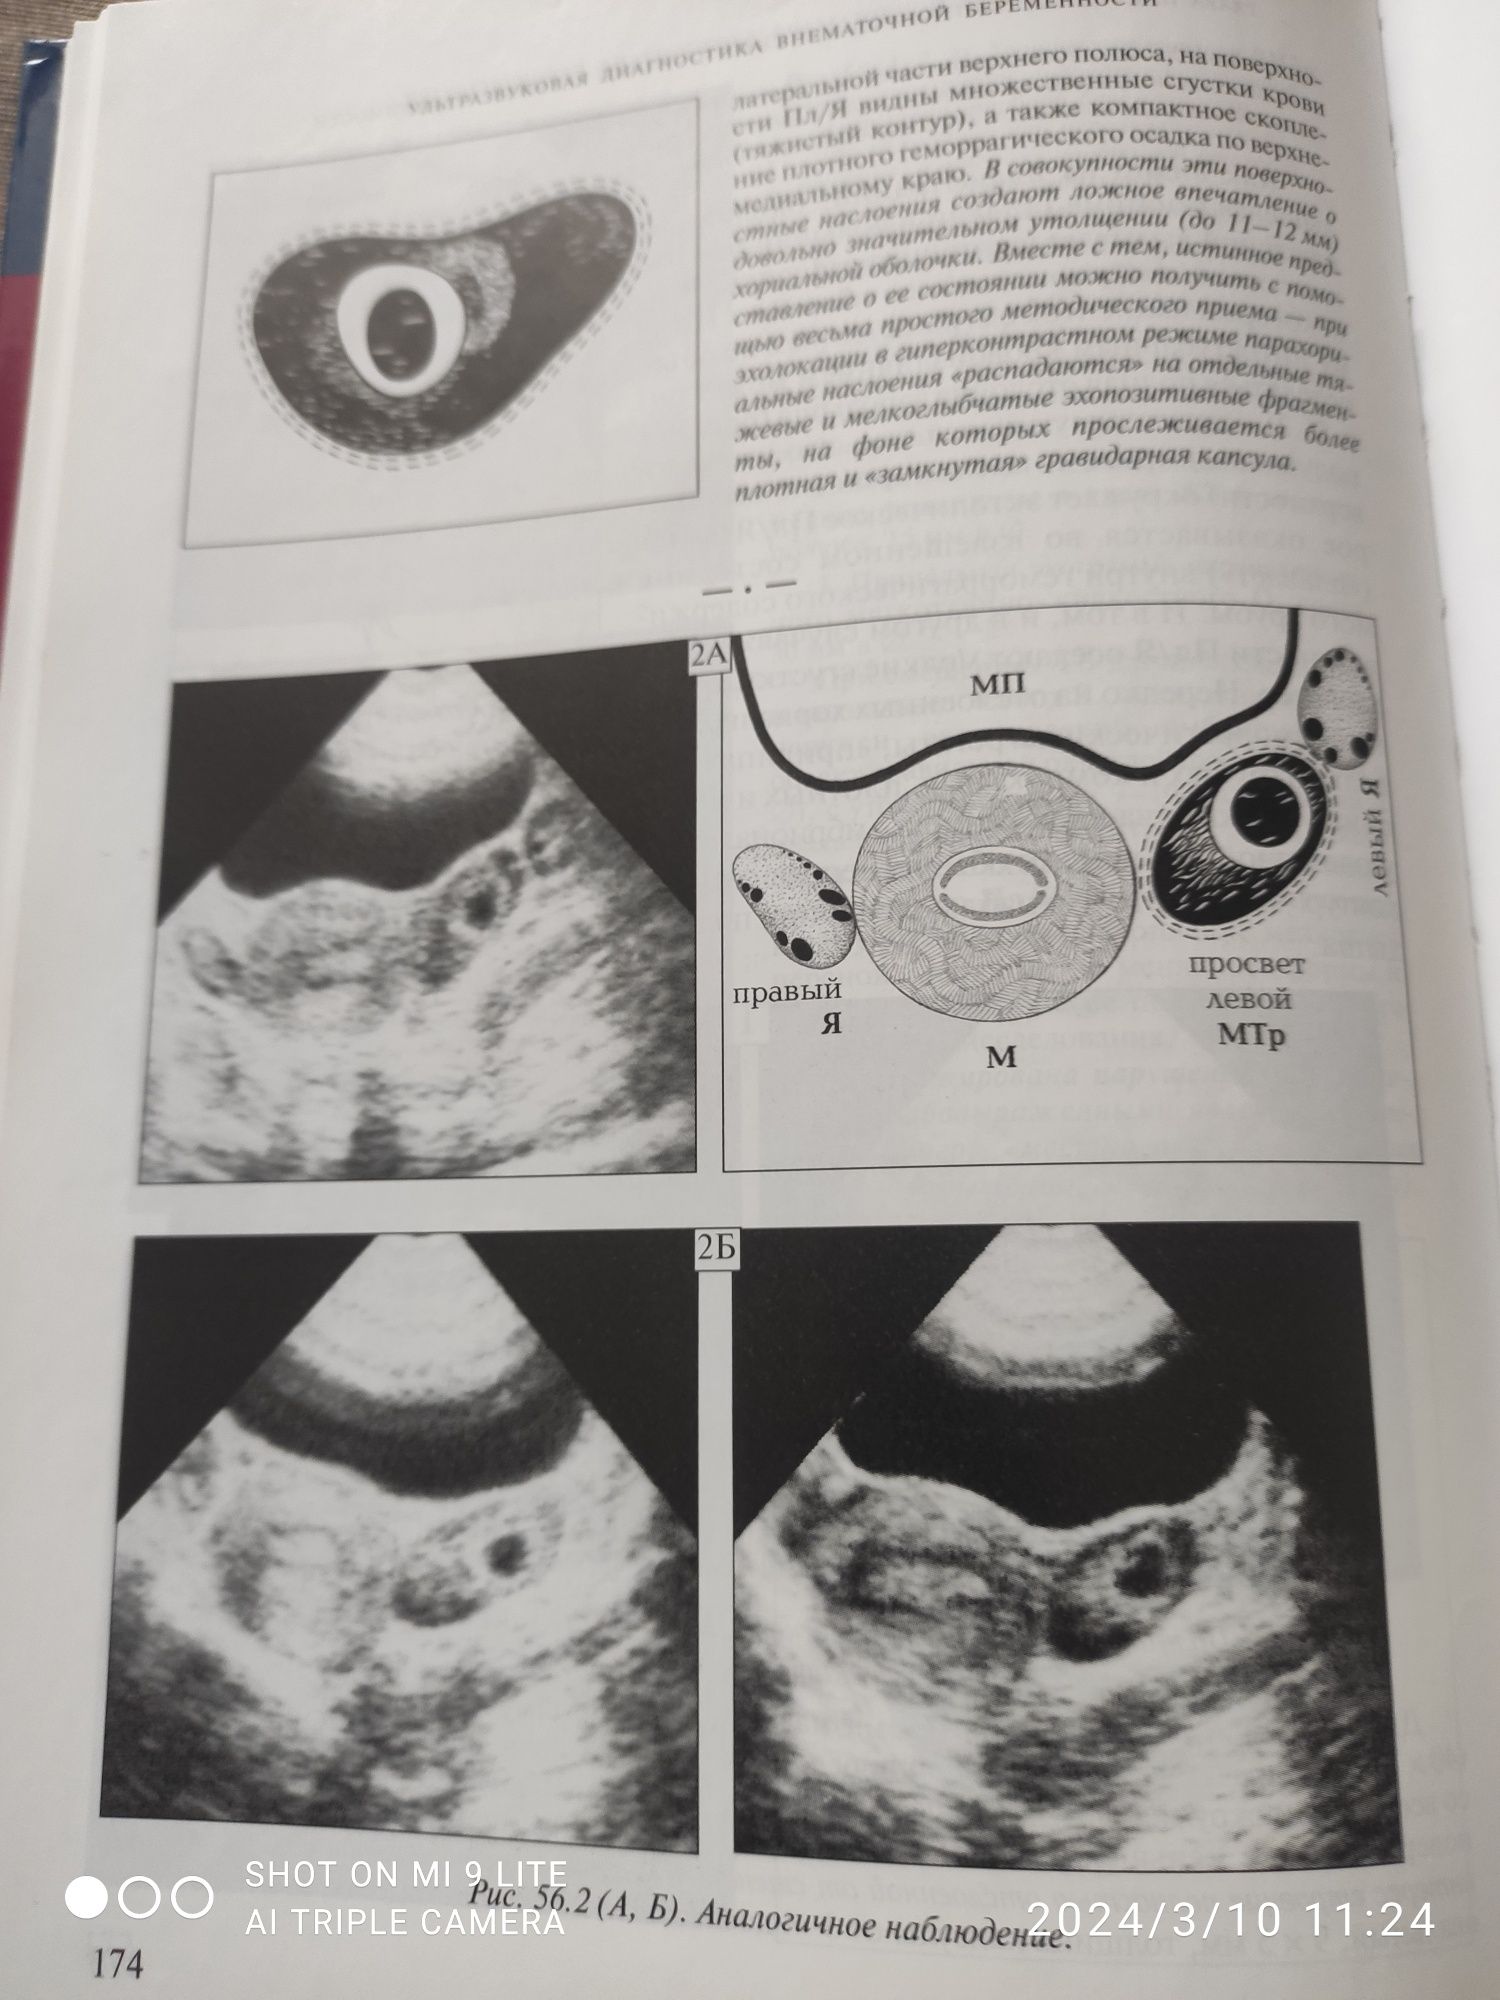 Продам учебник "Ультразвуковая диагностика внематочной беременности"